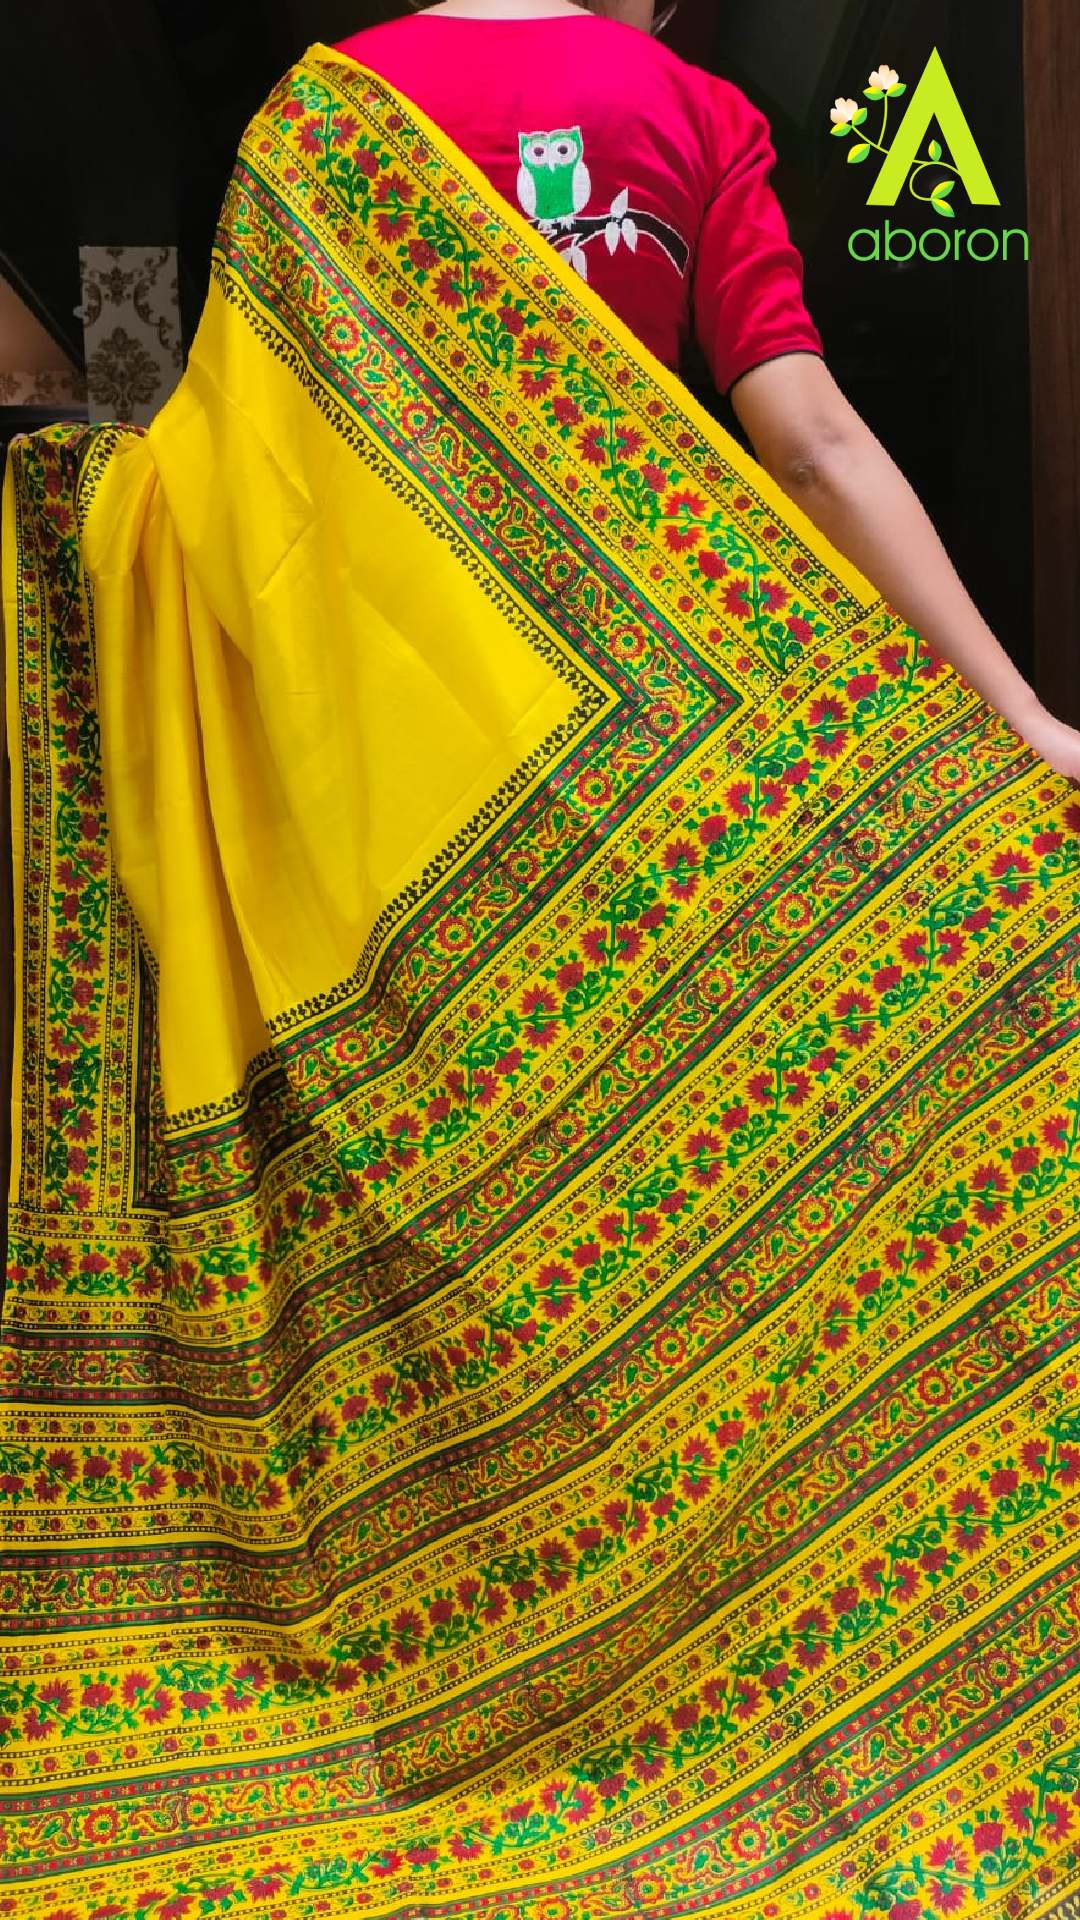 Handloom sari - Wikipedia